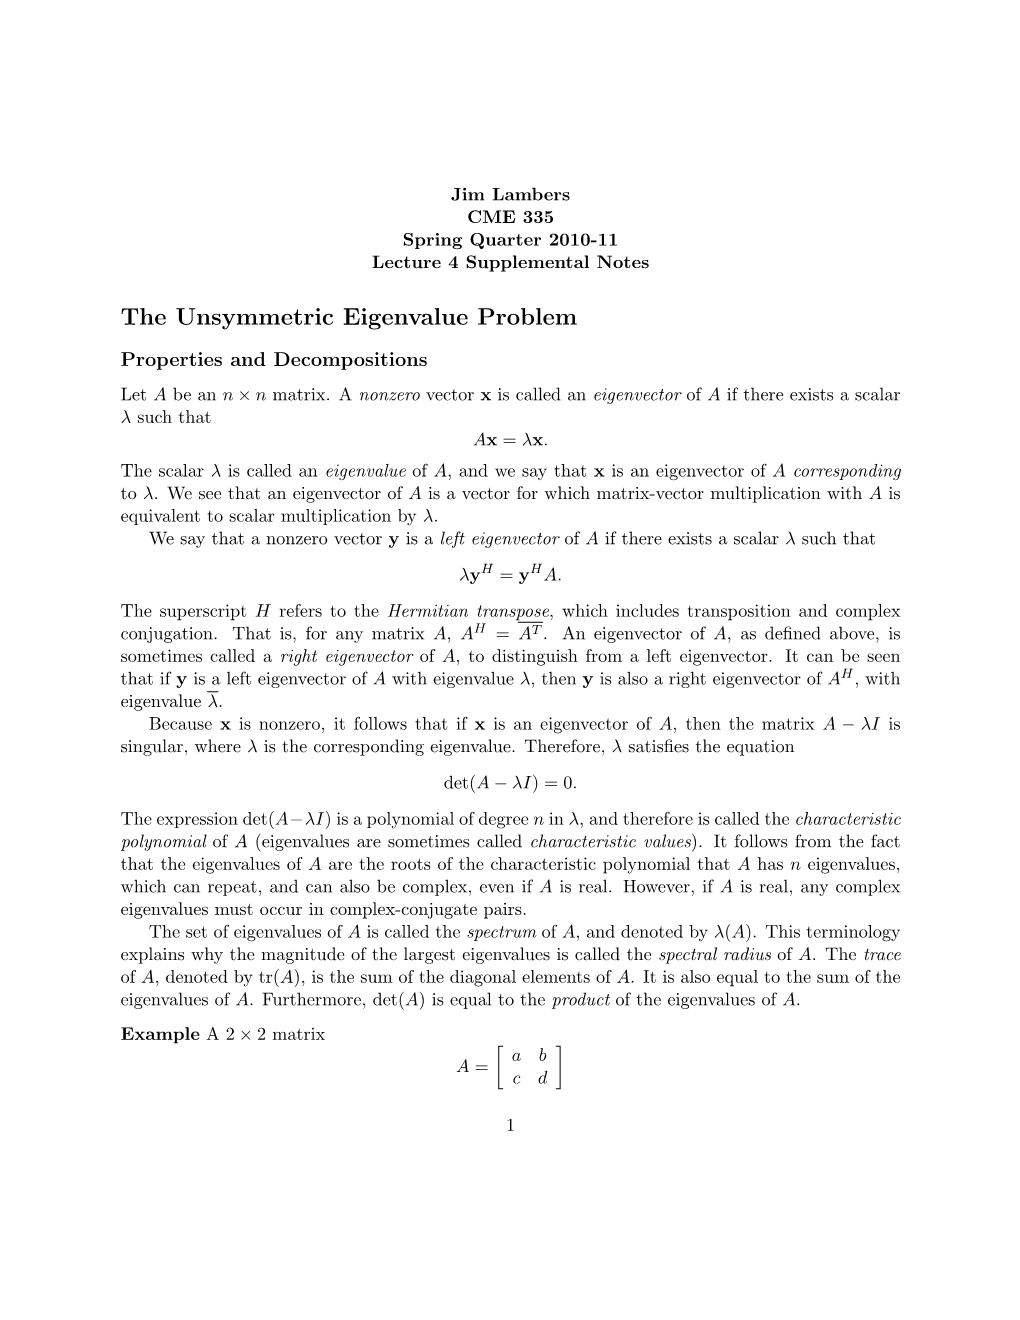 The Unsymmetric Eigenvalue Problem